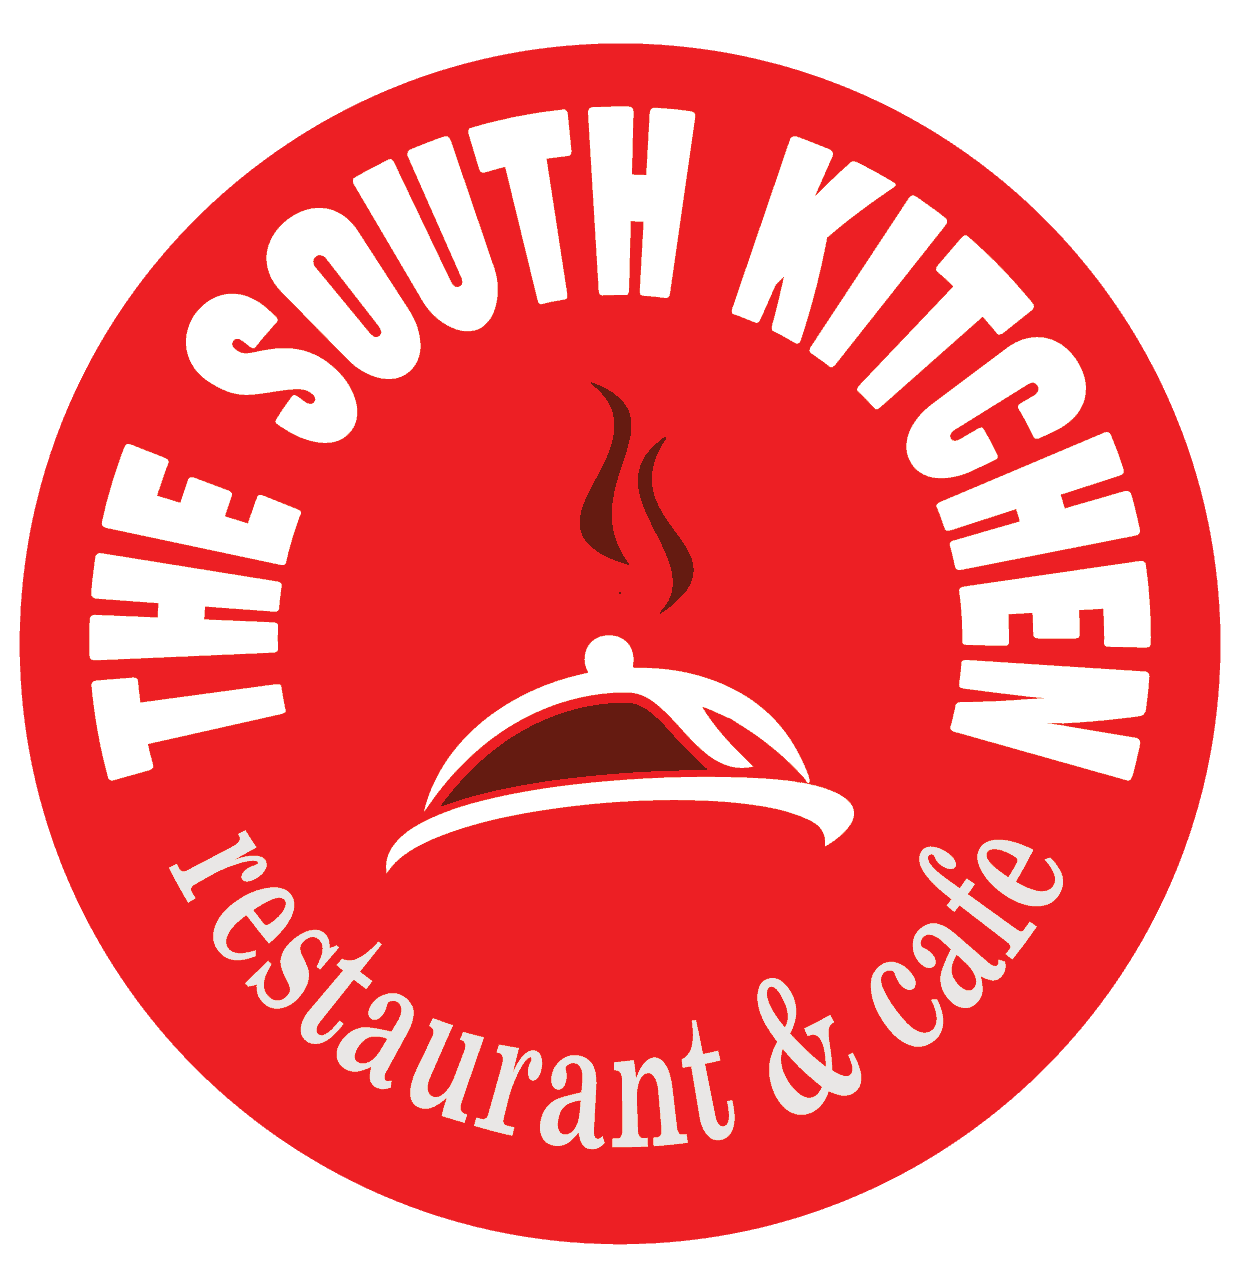 The south kitchen logo03-01